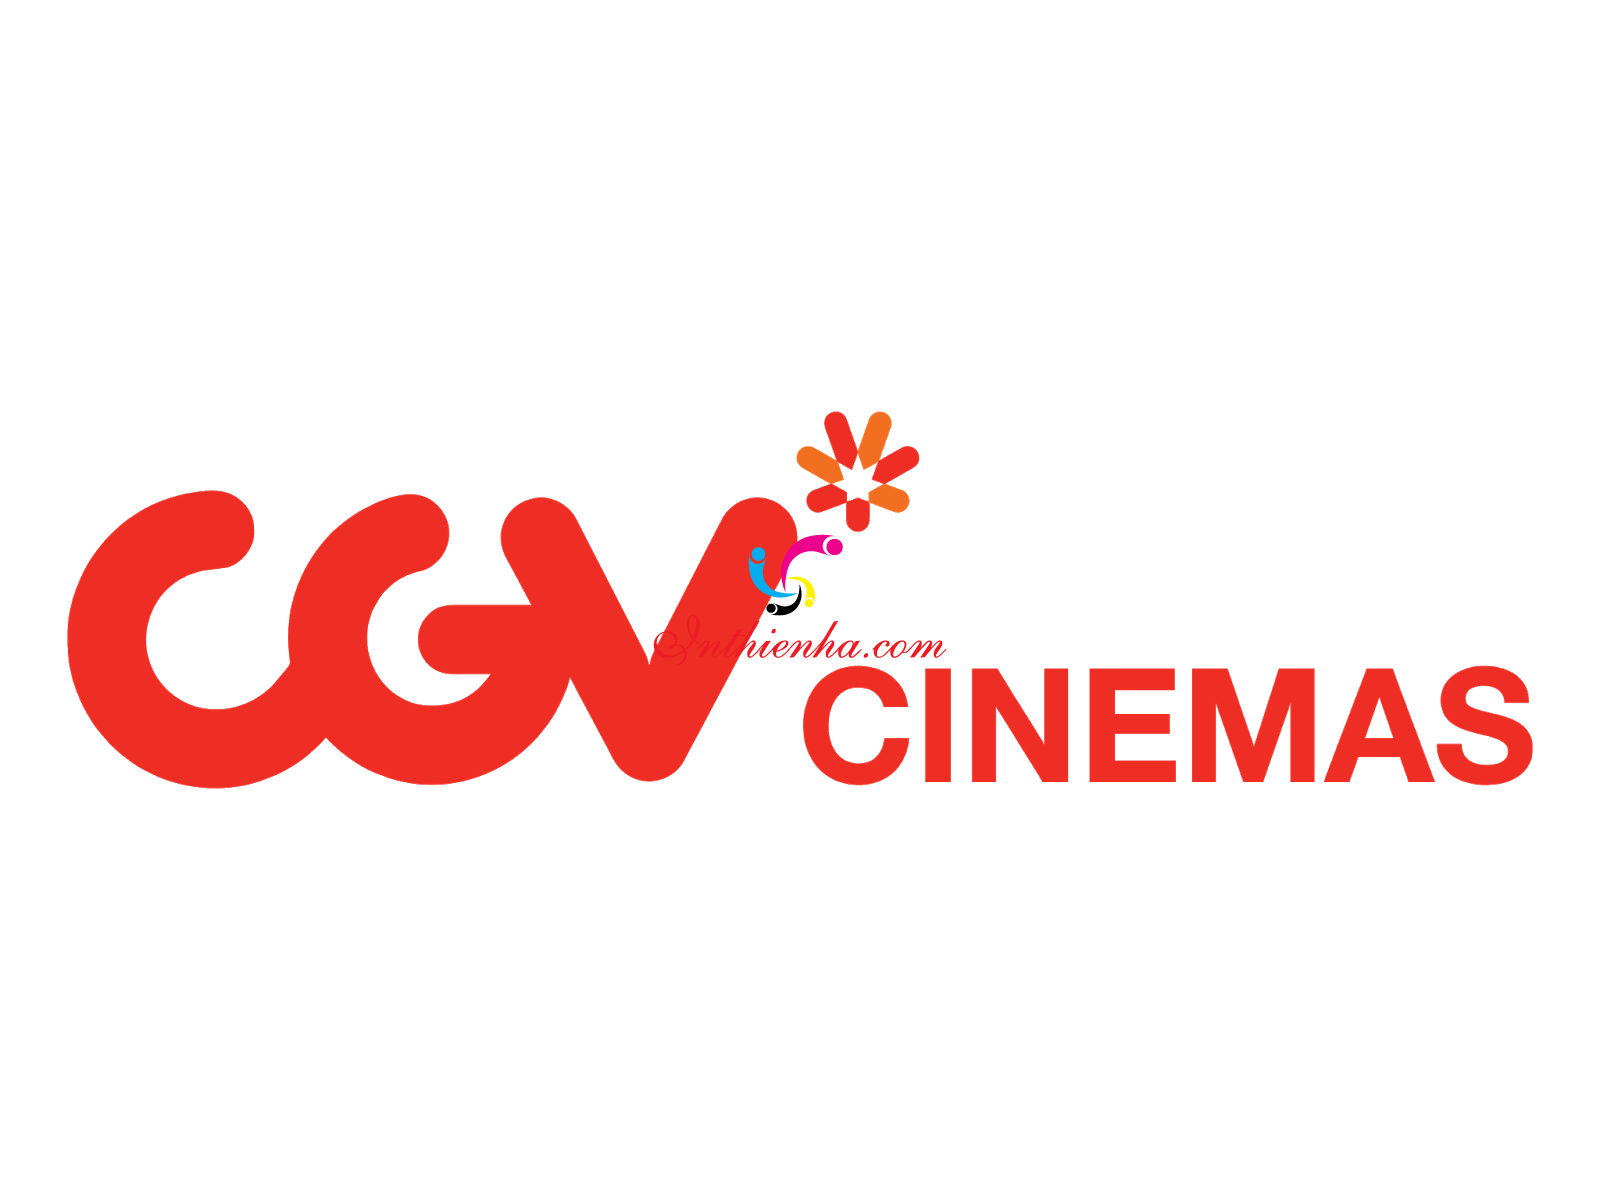 Download Logo rạp chiếu phim CGV file vector, PSD, AI miễn phí